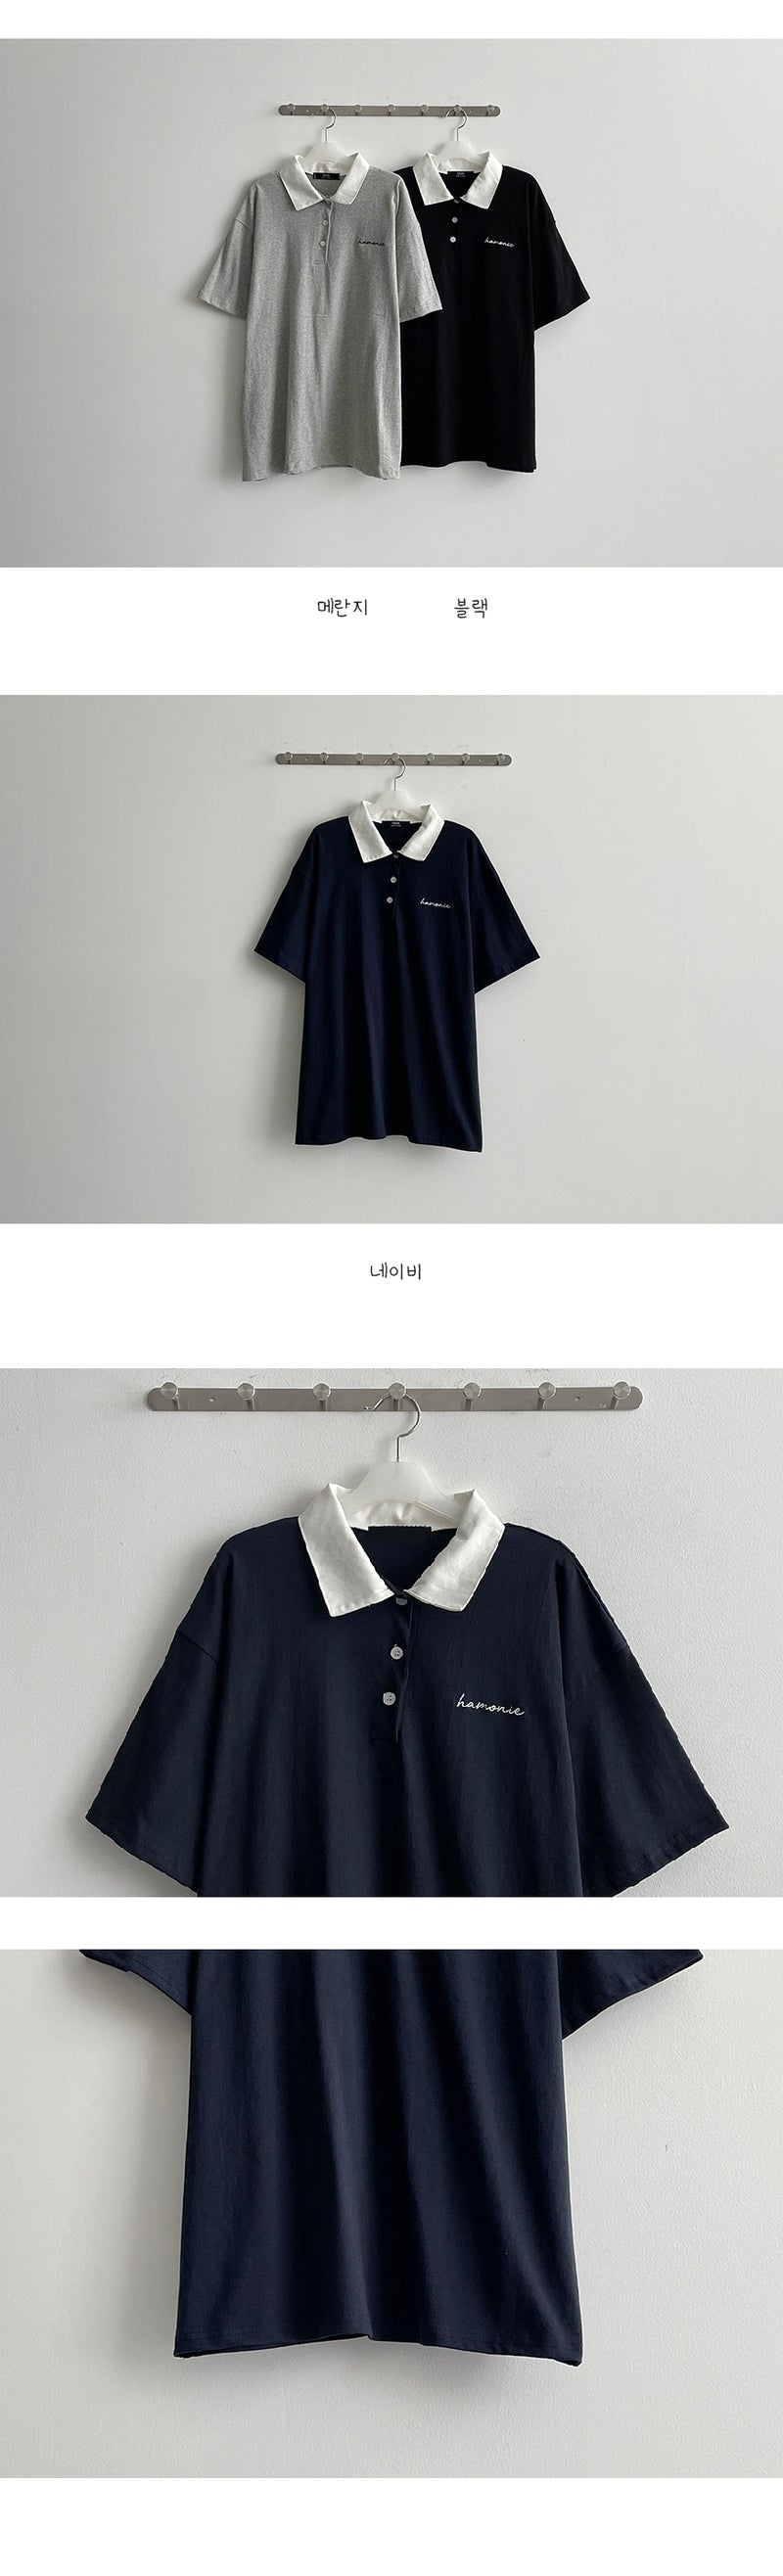 ハーモニーエンブロイダードカラーショートスリーブシャツ / Harmony embroidered collar short sleeve shirt